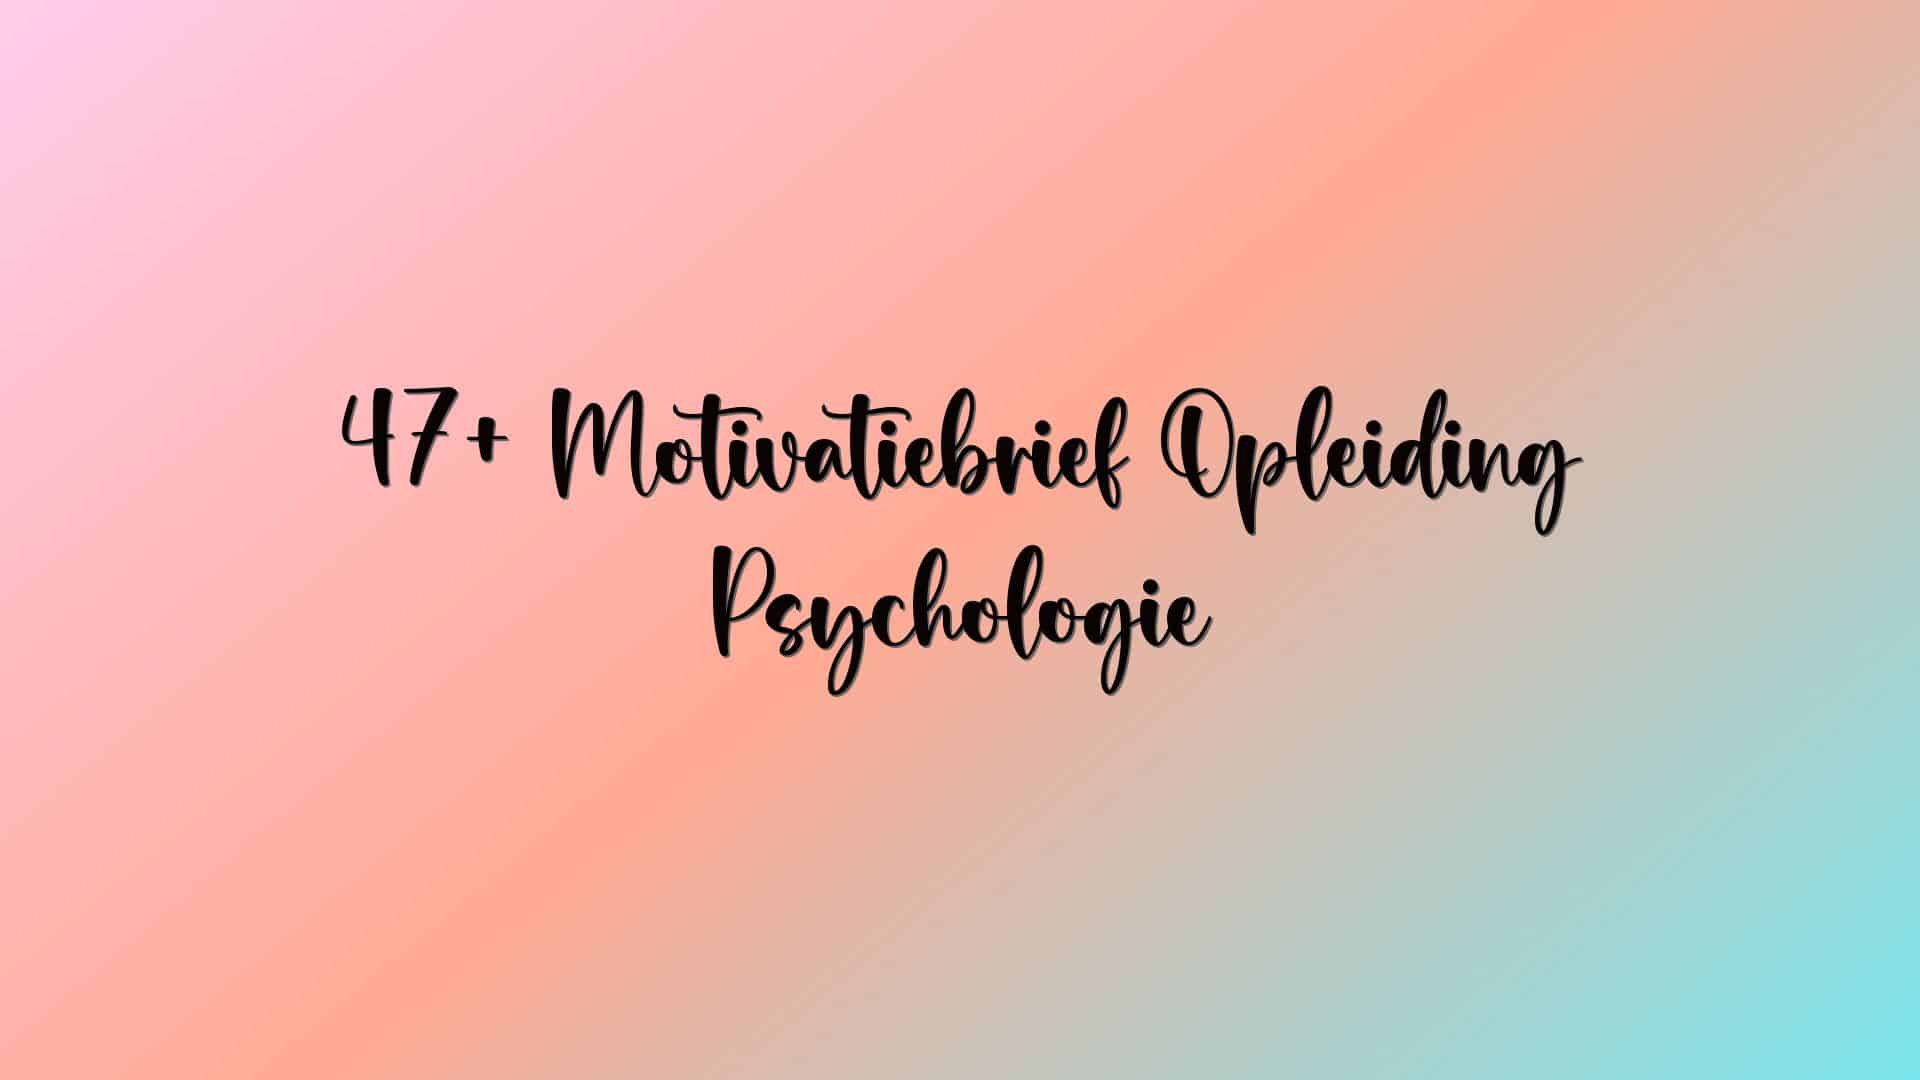 47+ Motivatiebrief Opleiding Psychologie